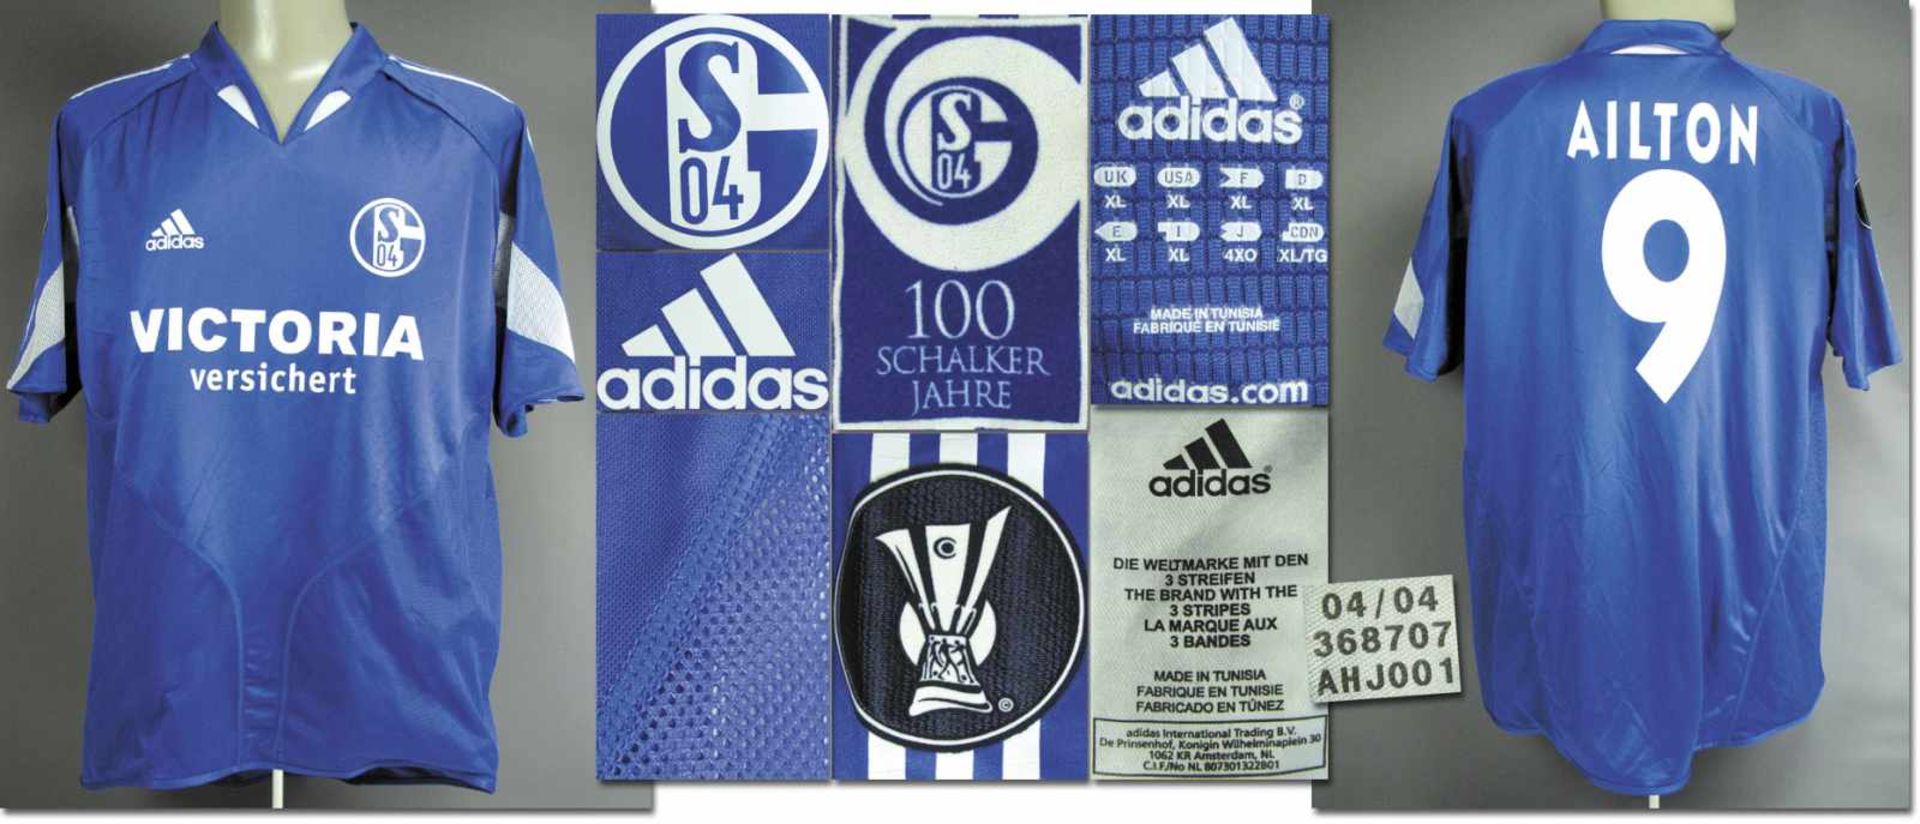 match worn football shirt Schalke 04 2004/05 - Original match worn shirt FC Schalke 04 with number